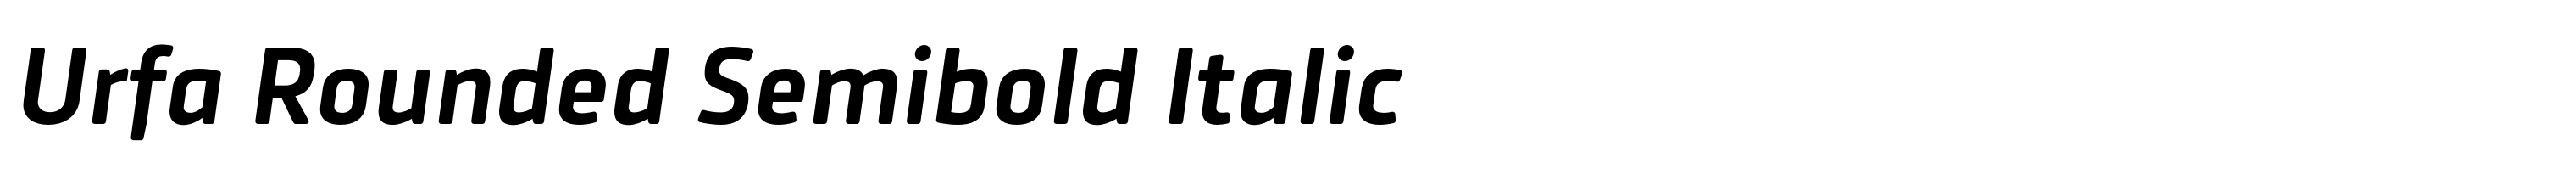 Urfa Rounded Semibold Italic